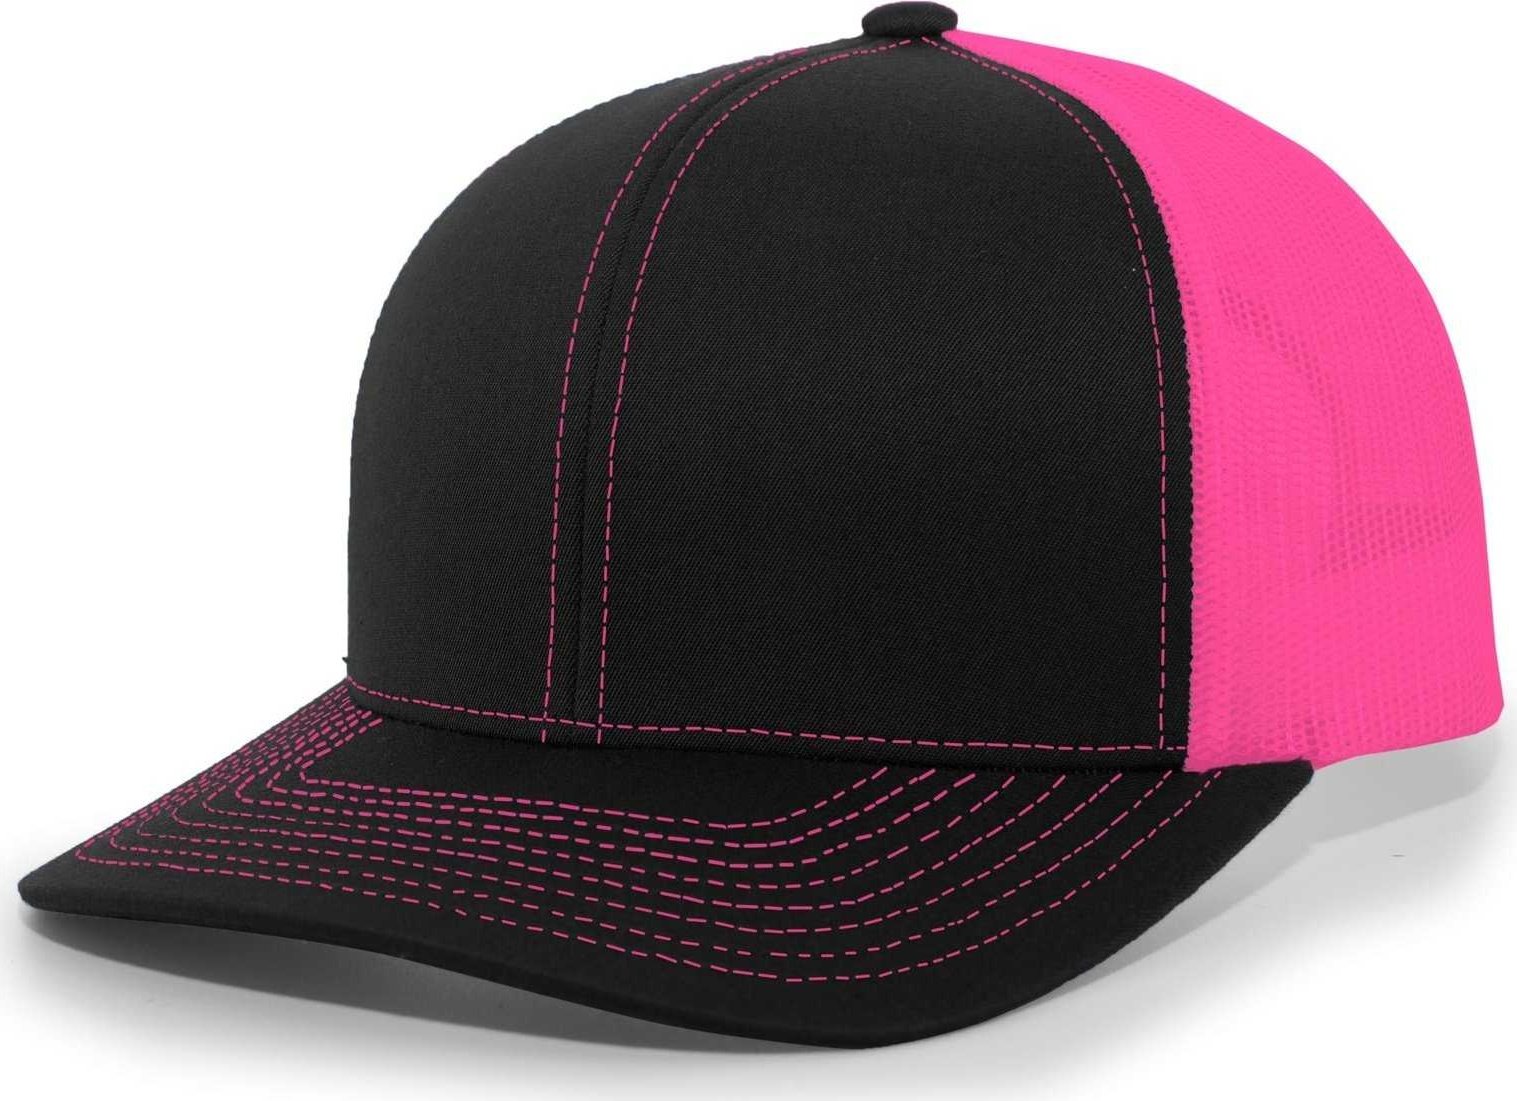 Pacific Headwear 104C Trucker Snapback Cap - Black Pink - HIT a Double